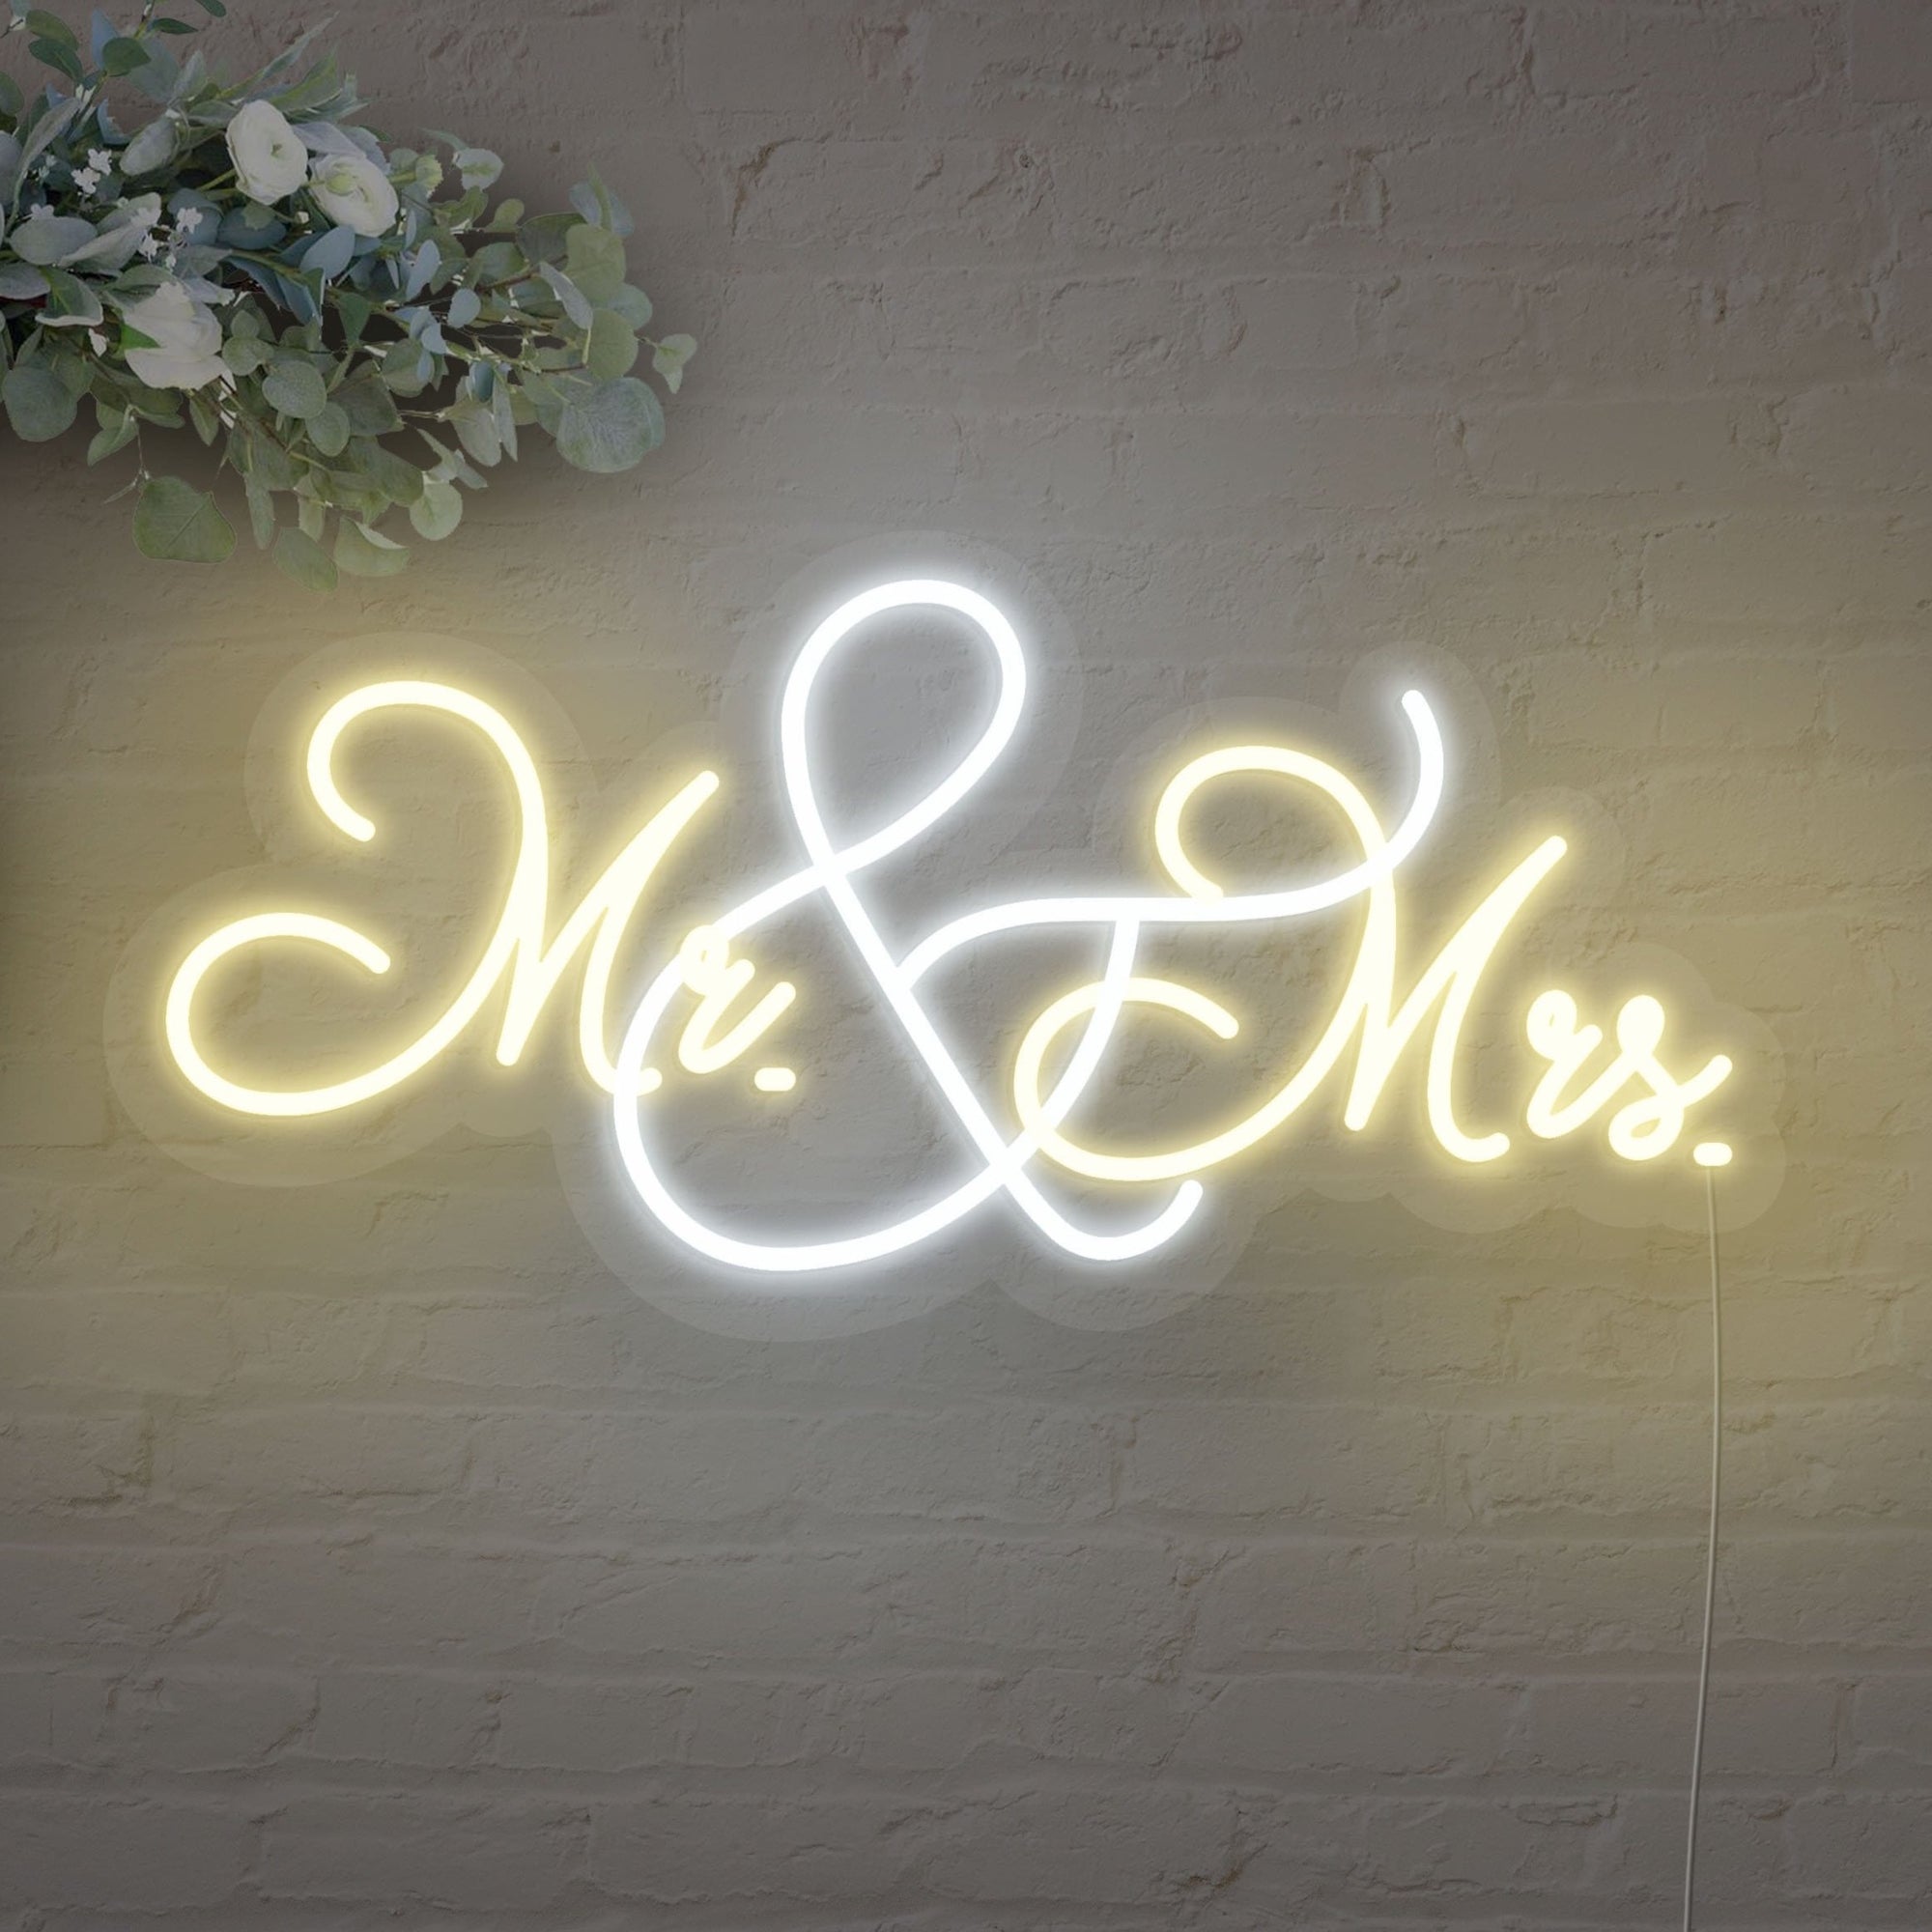 Mr. & Mrs. LED Neon Sign